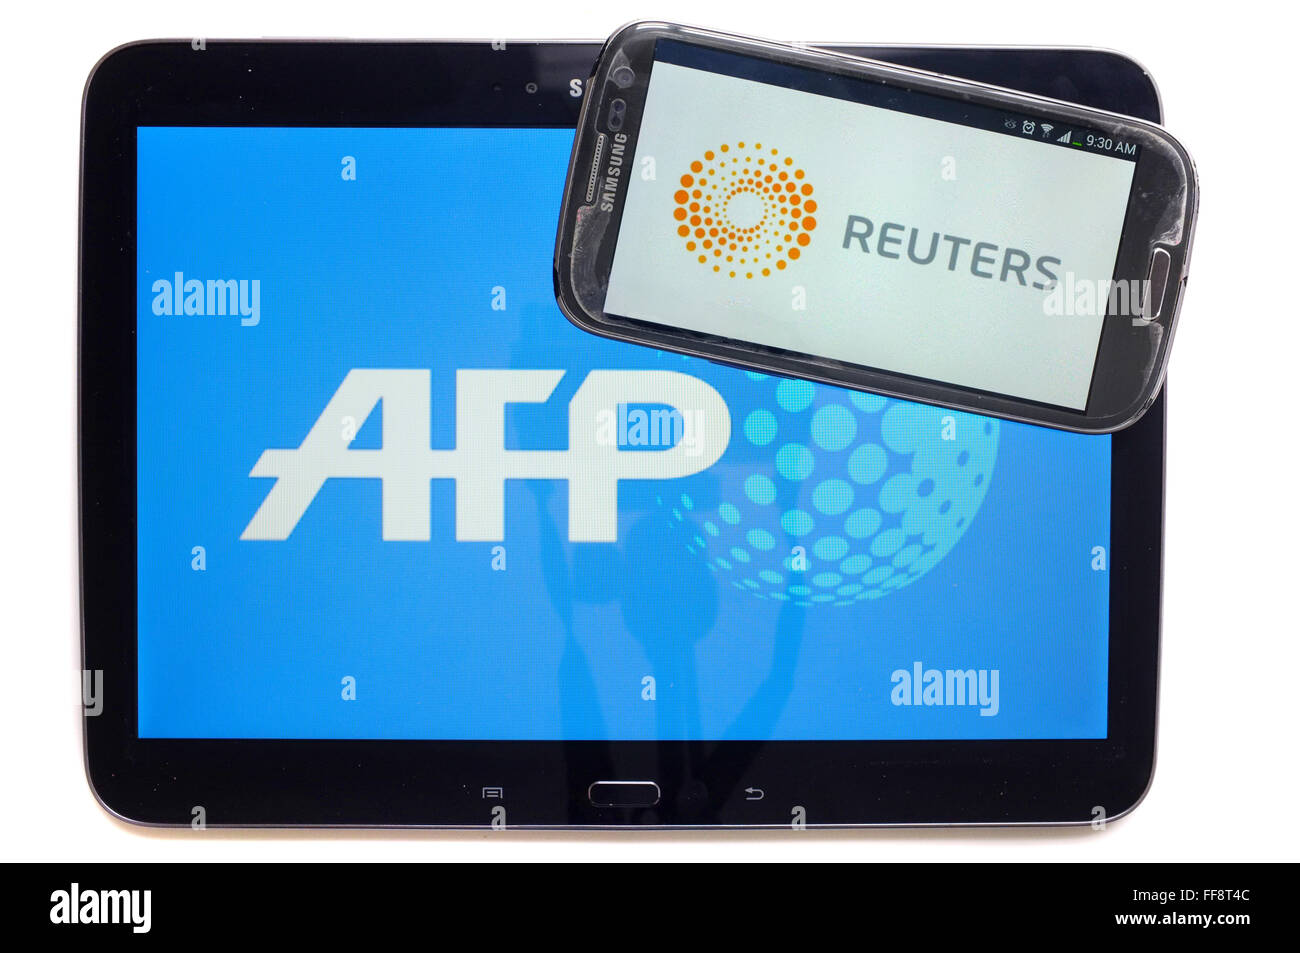 Les agences de presse AFP et Reuters sur les écrans d'une tablette et un smartphone photographié sur un fond blanc. Banque D'Images